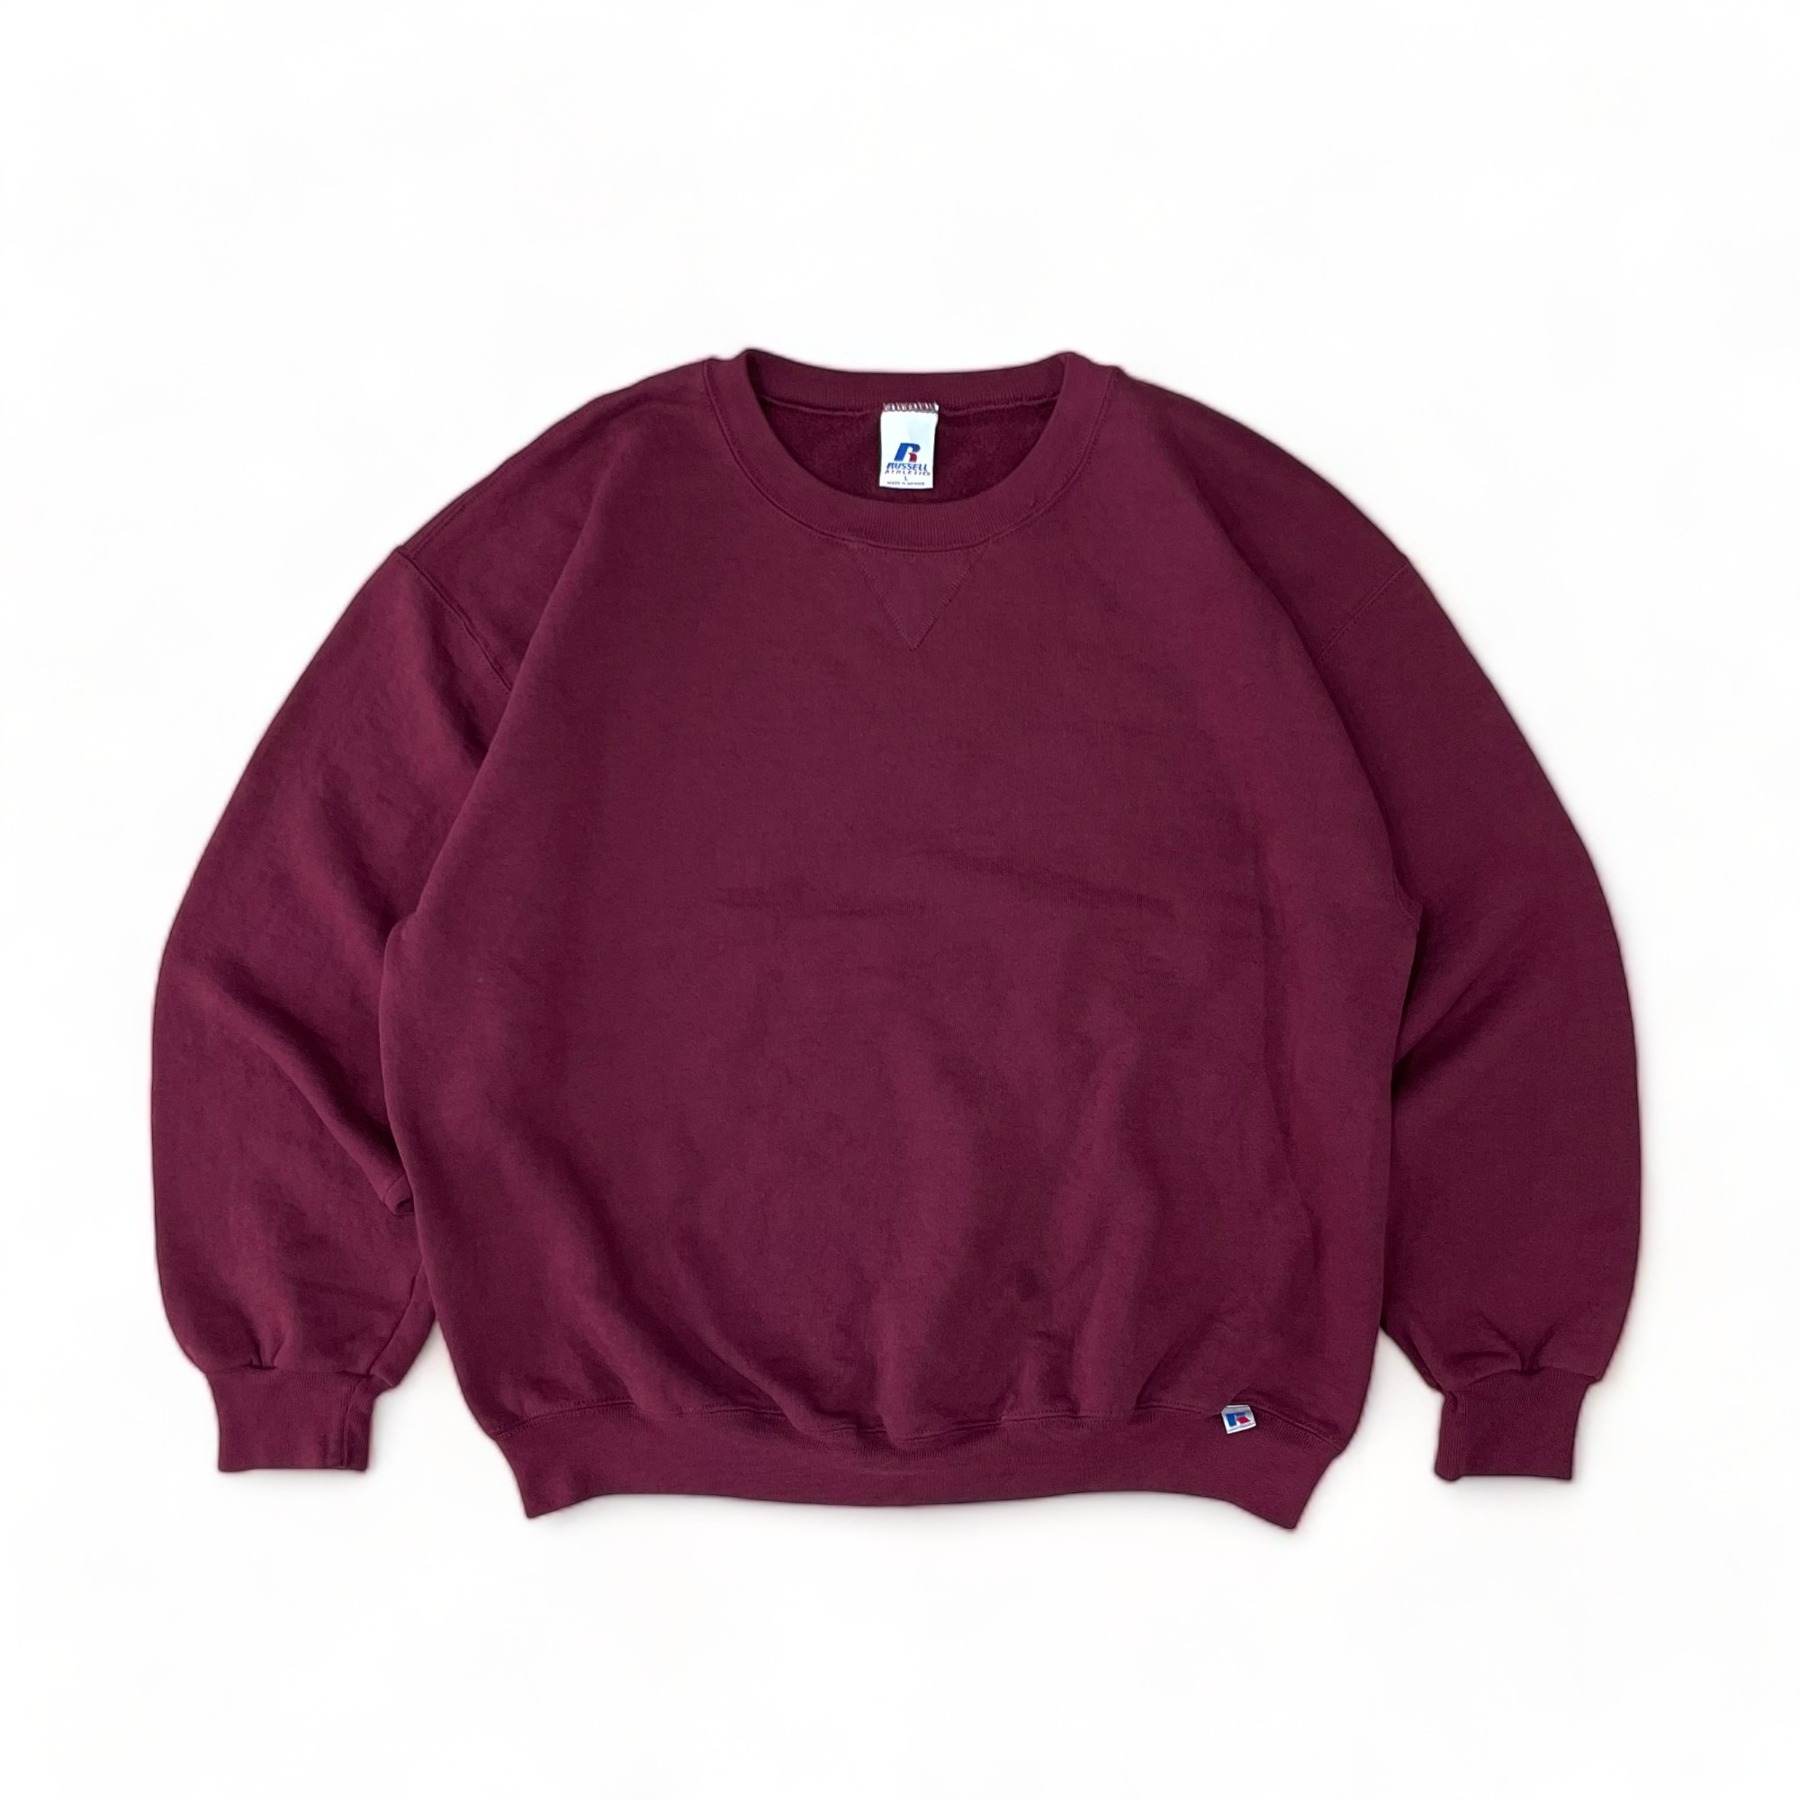 Vintage Russell Plain Sweatshirt - L